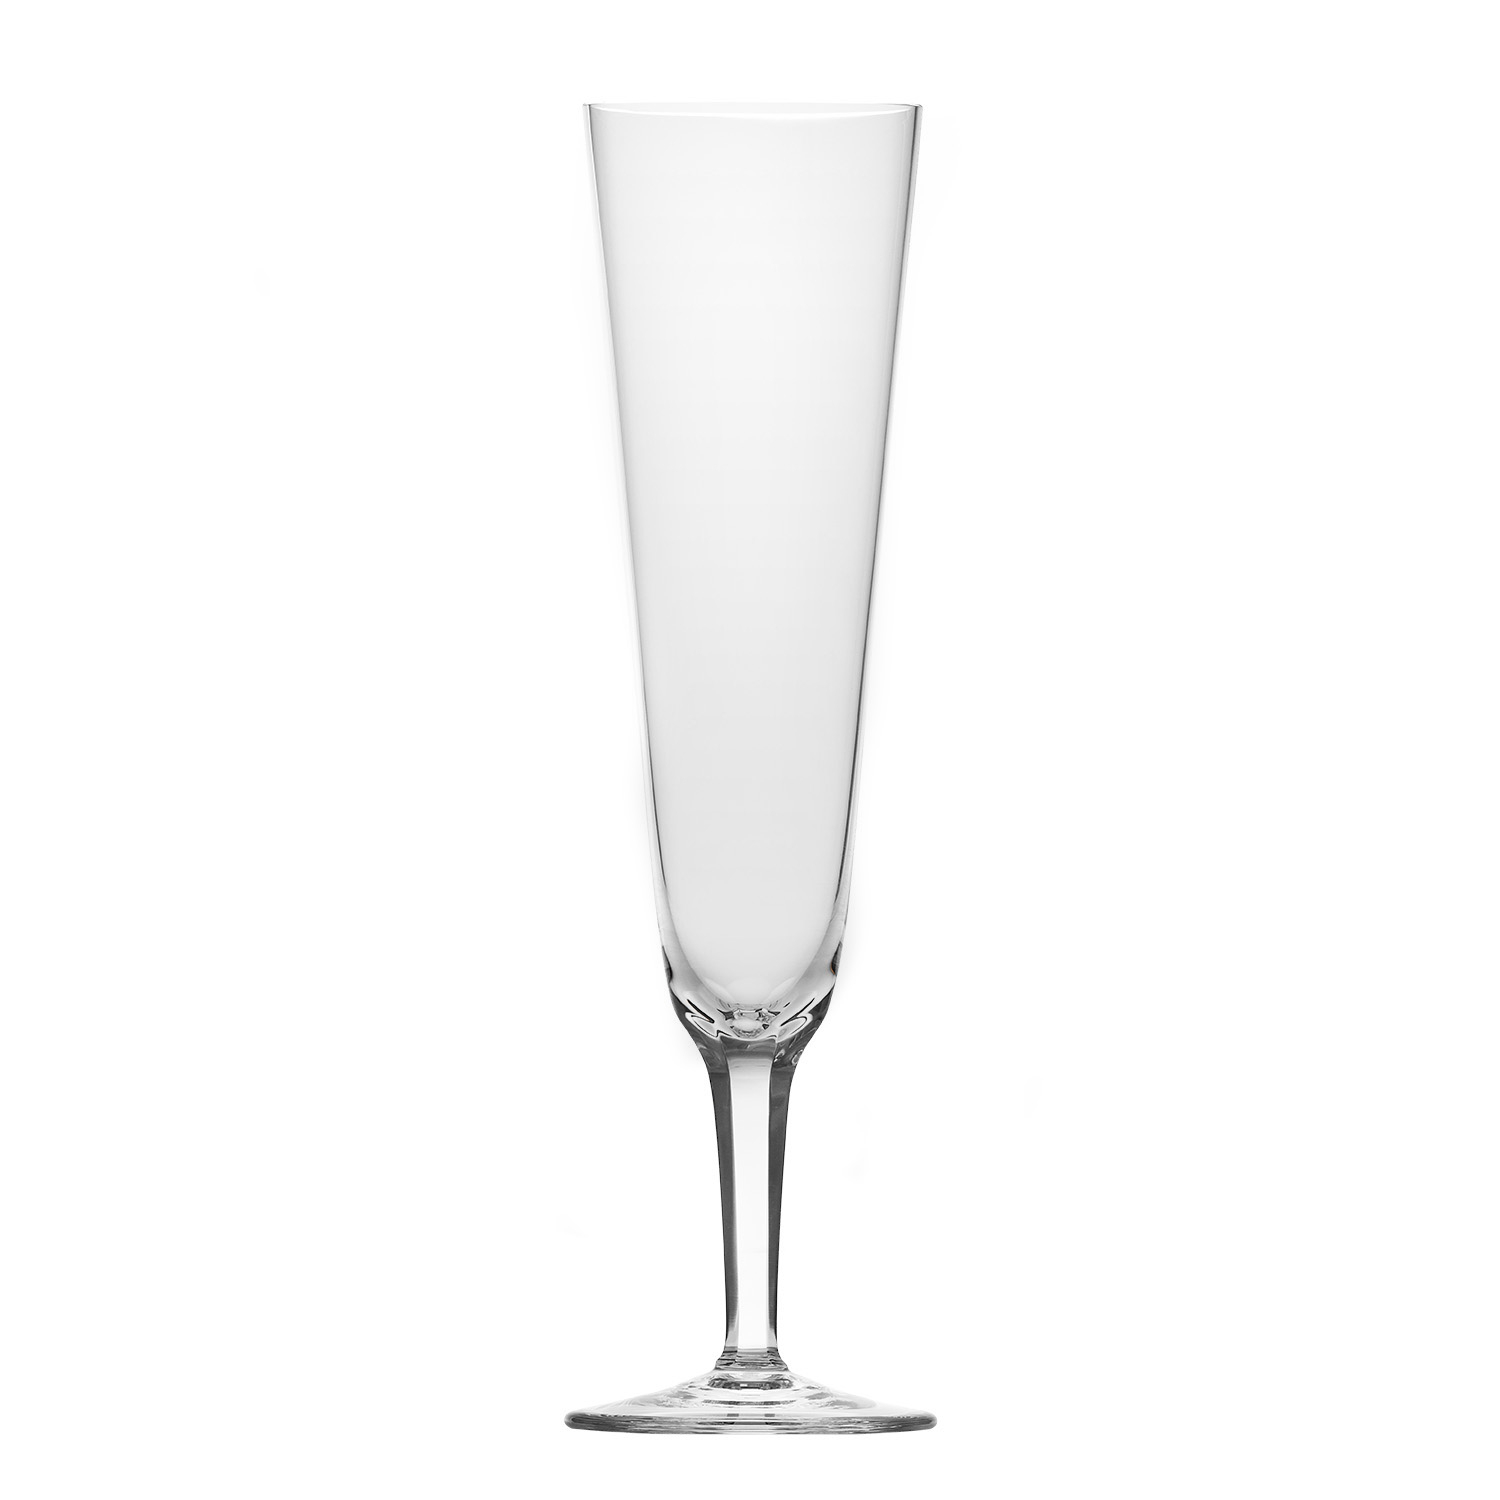 Royal sklenka na šampaňské, 220 ml